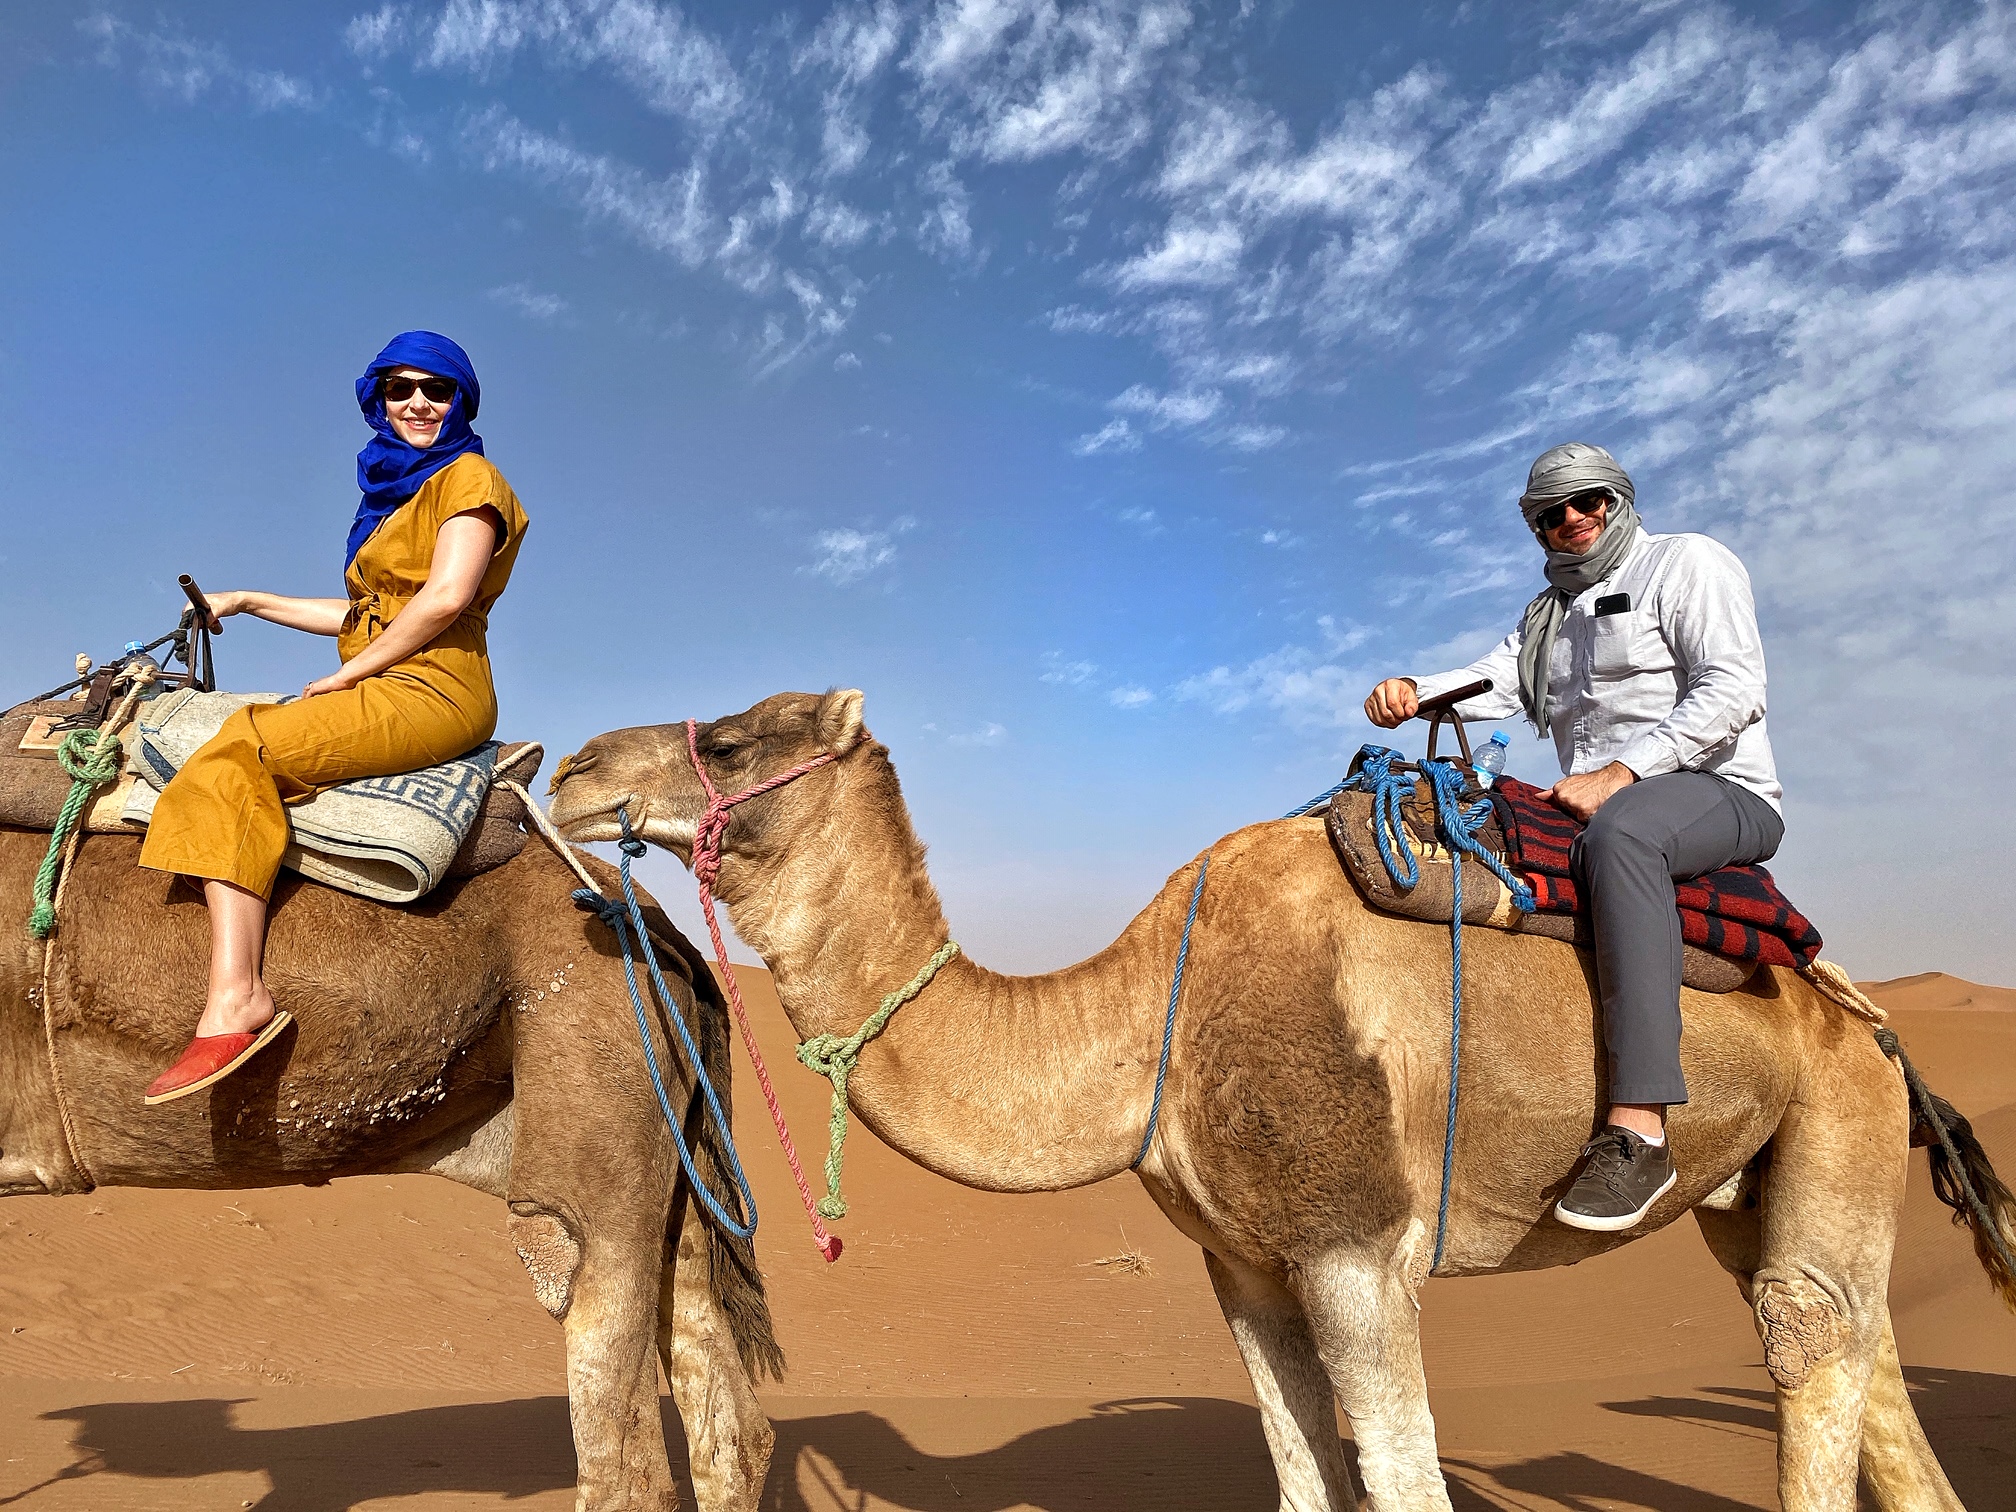 Erg Chigaga Desert Luxury Camp, camel ride, morocco, the-alyst.com